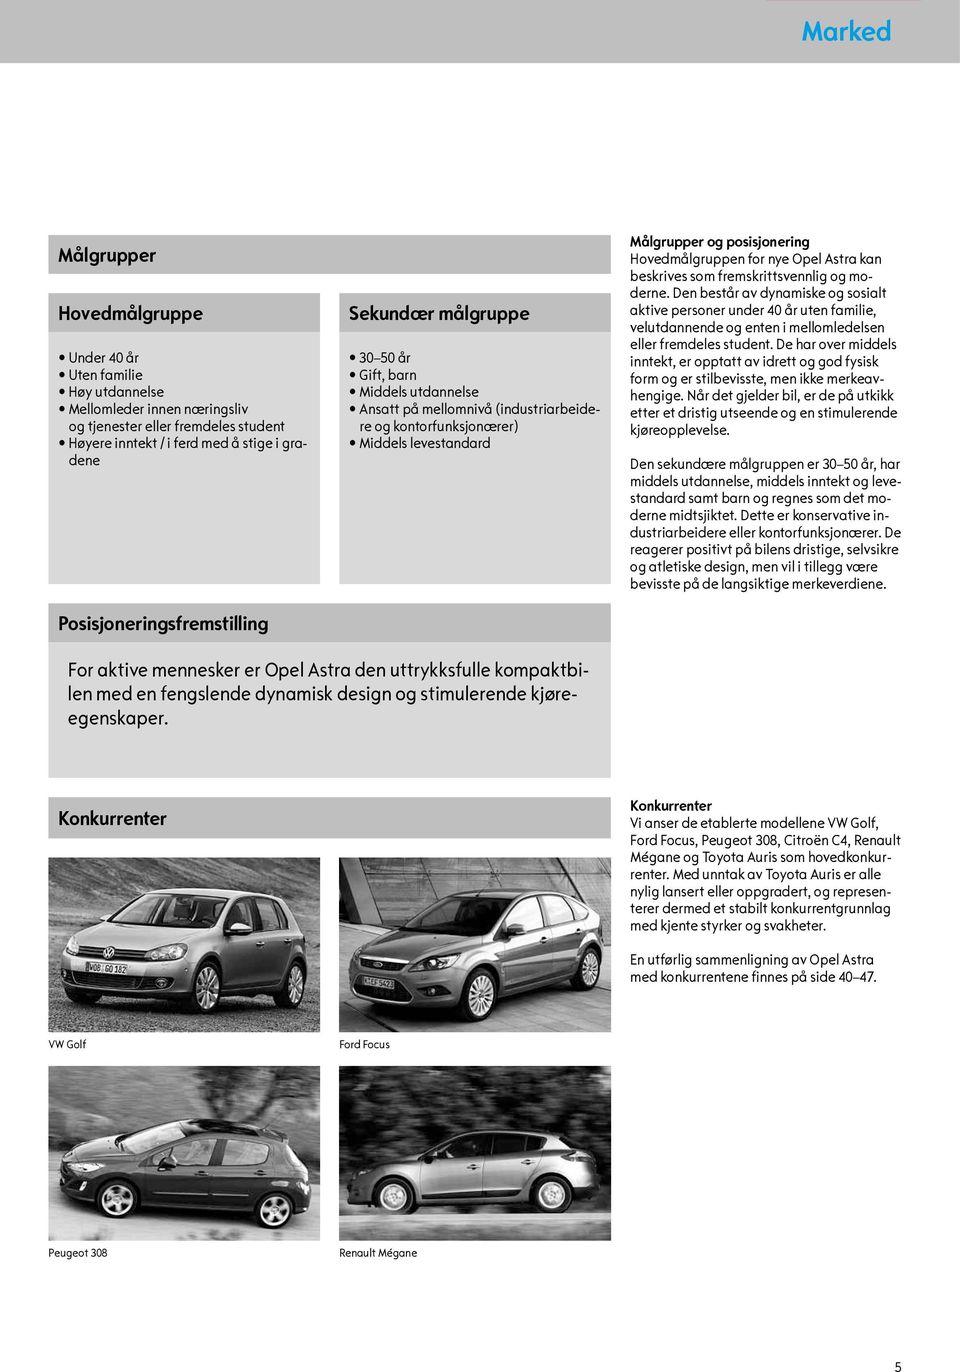 Hovedmålgruppen for nye Opel Astra kan beskrives som fremskrittsvennlig og moderne.